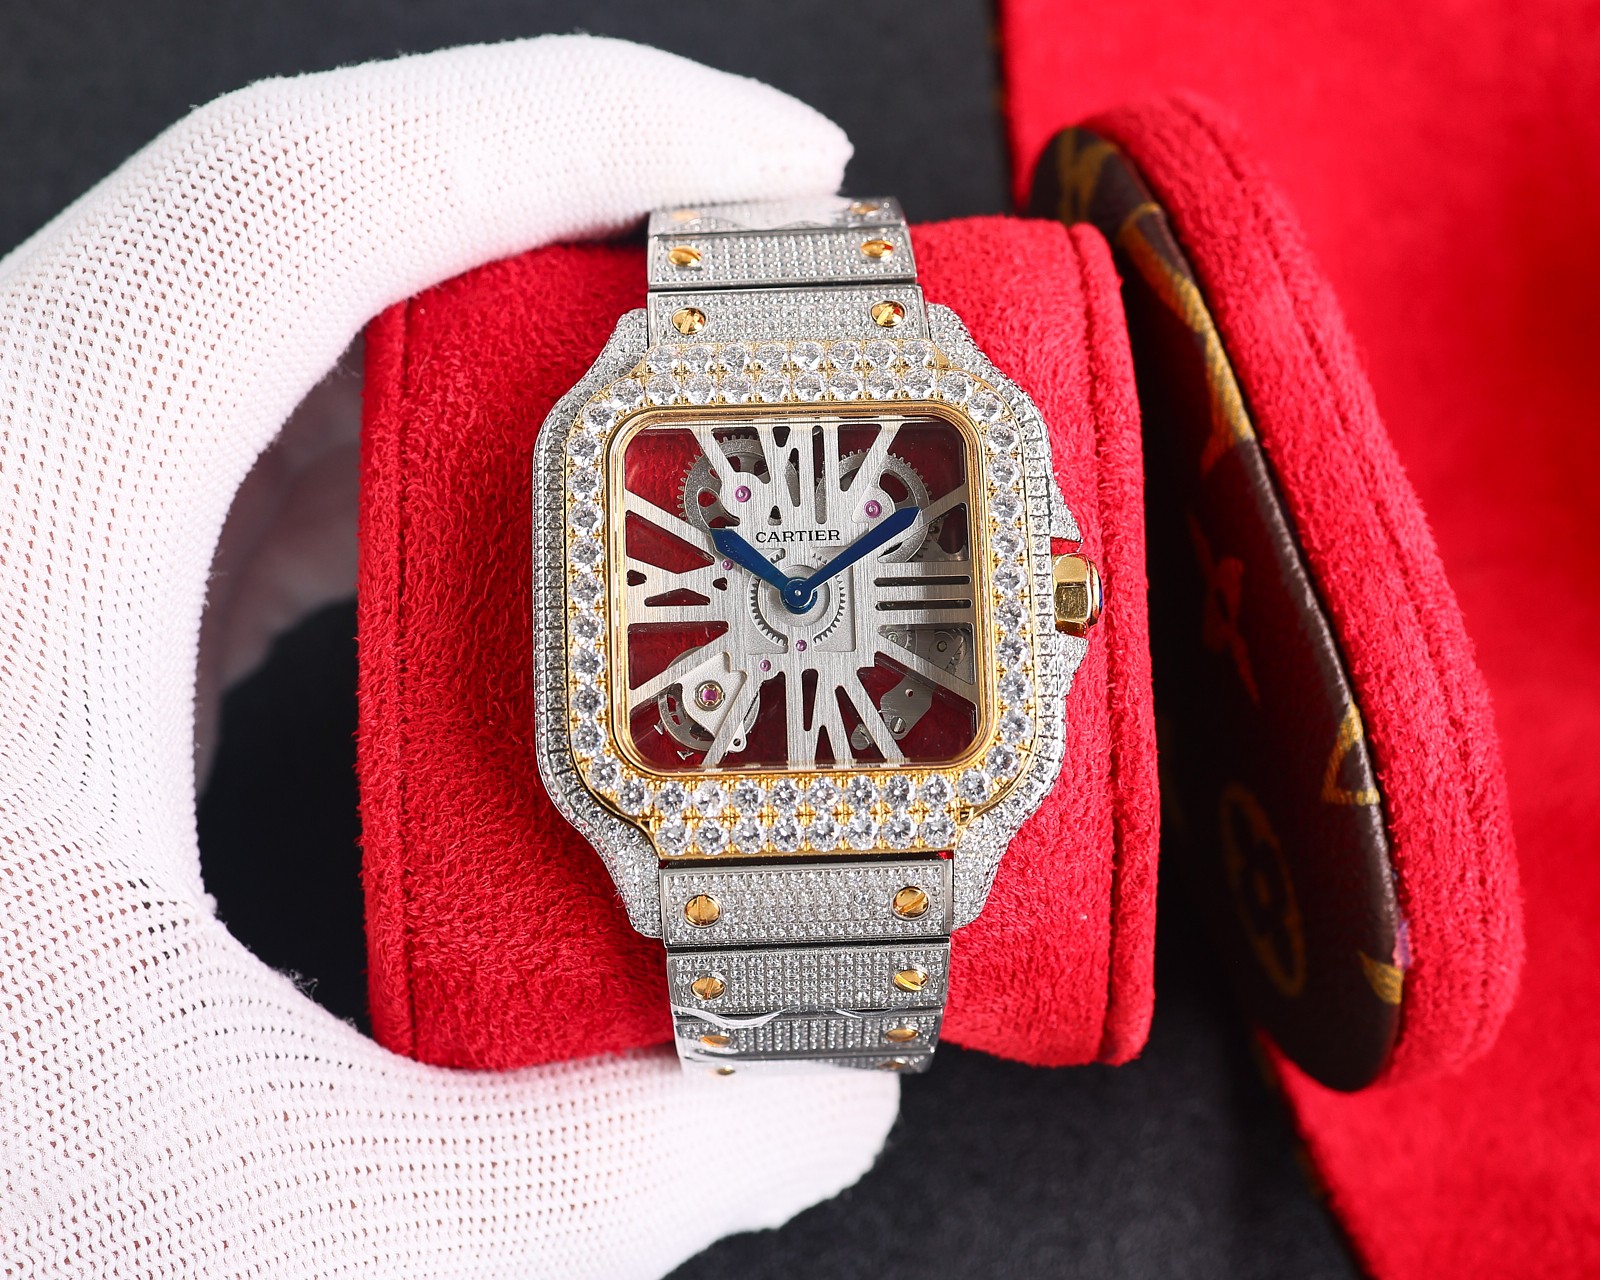 CARTIERカルティエ 腕時計 似てるスーパーコピー フランス 薄いワッチ レザー 四角い時計 スチールバンド_1